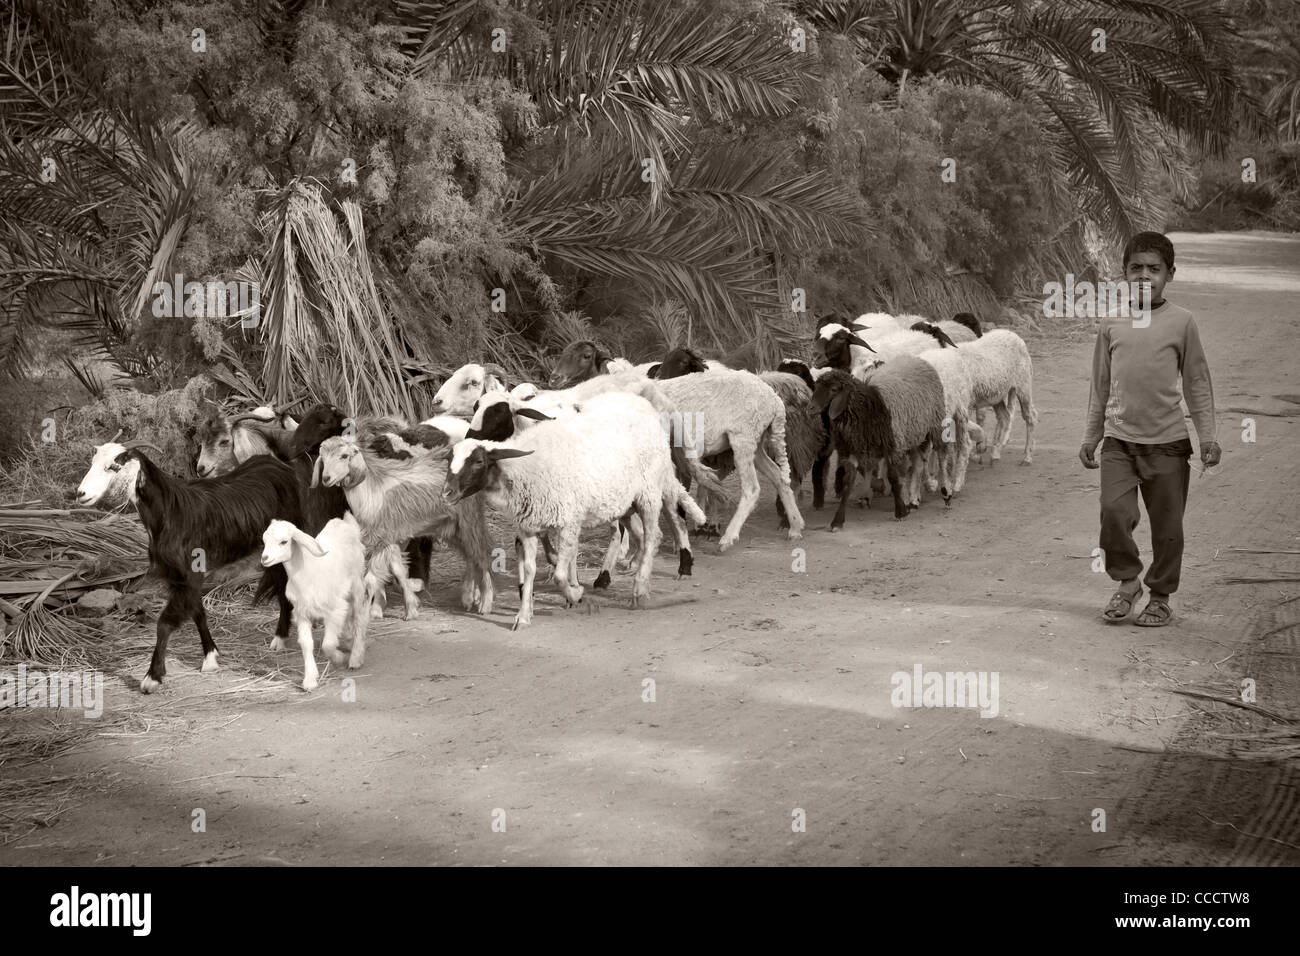 Coup de jeune garçon monochrome marcher avec troupeau de moutons et chèvres à Dakhla Oasis, Désert occidental de l'Égypte Banque D'Images